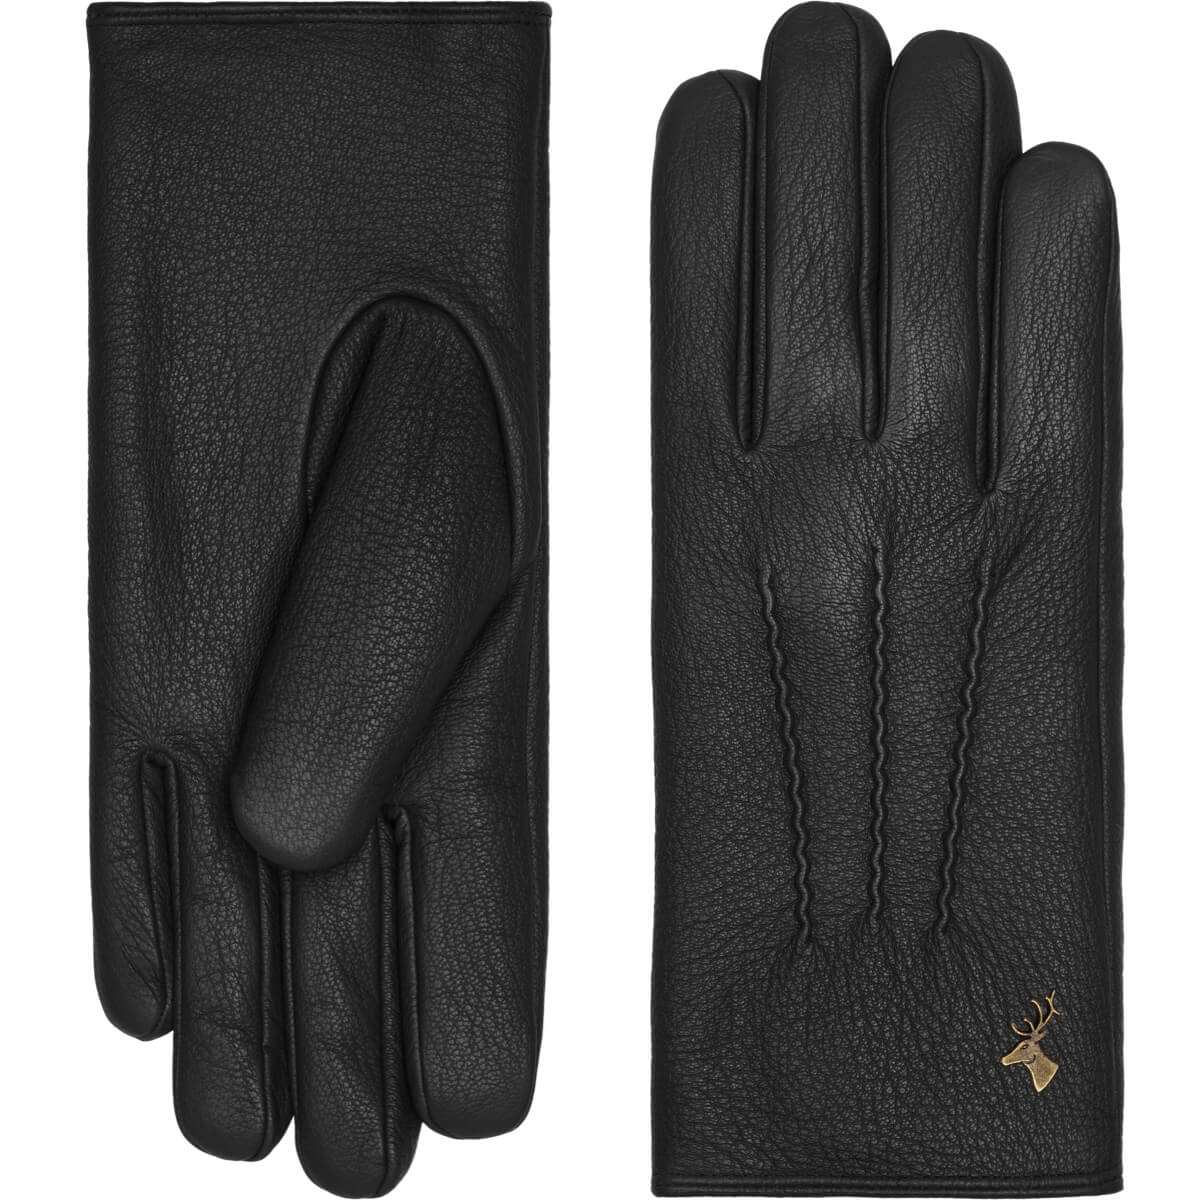 Black Leather Gloves Women Josie - Schwartz & von Halen® - Premium Leather Gloves - 2